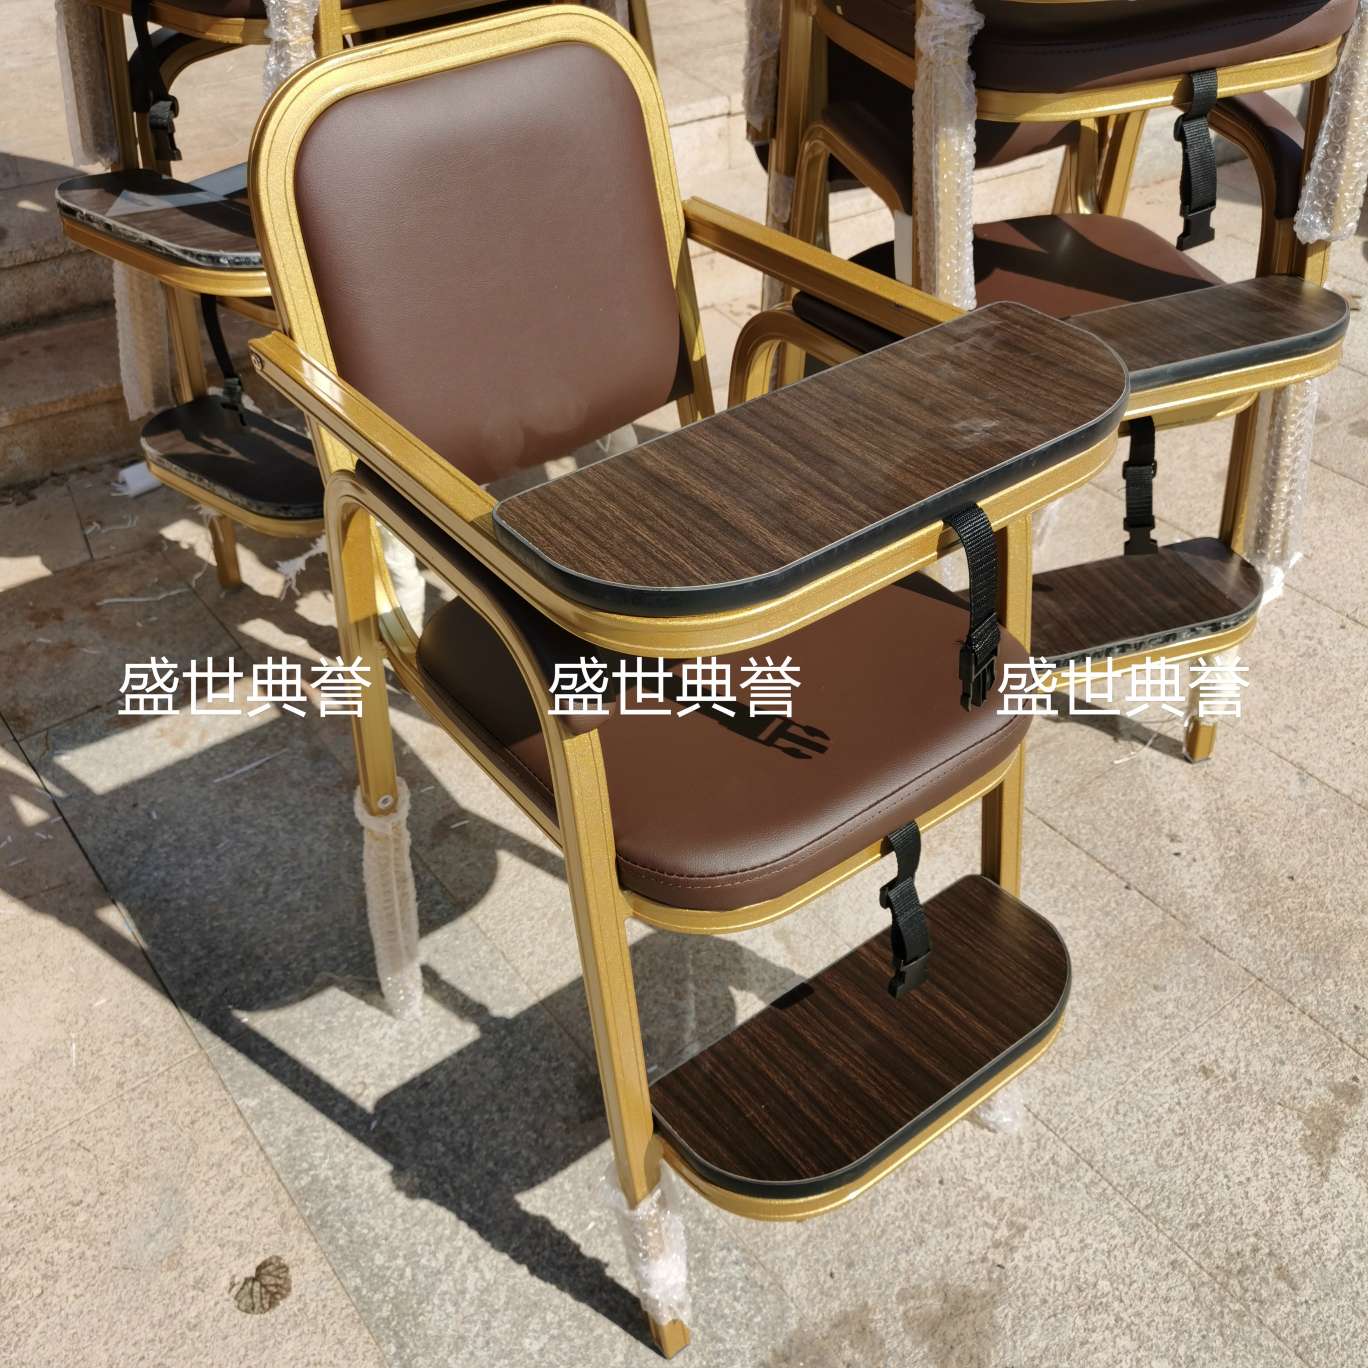 上海五星级酒店宴会厅宝宝餐椅饭店包厢儿童就餐椅子铝合金宝宝椅